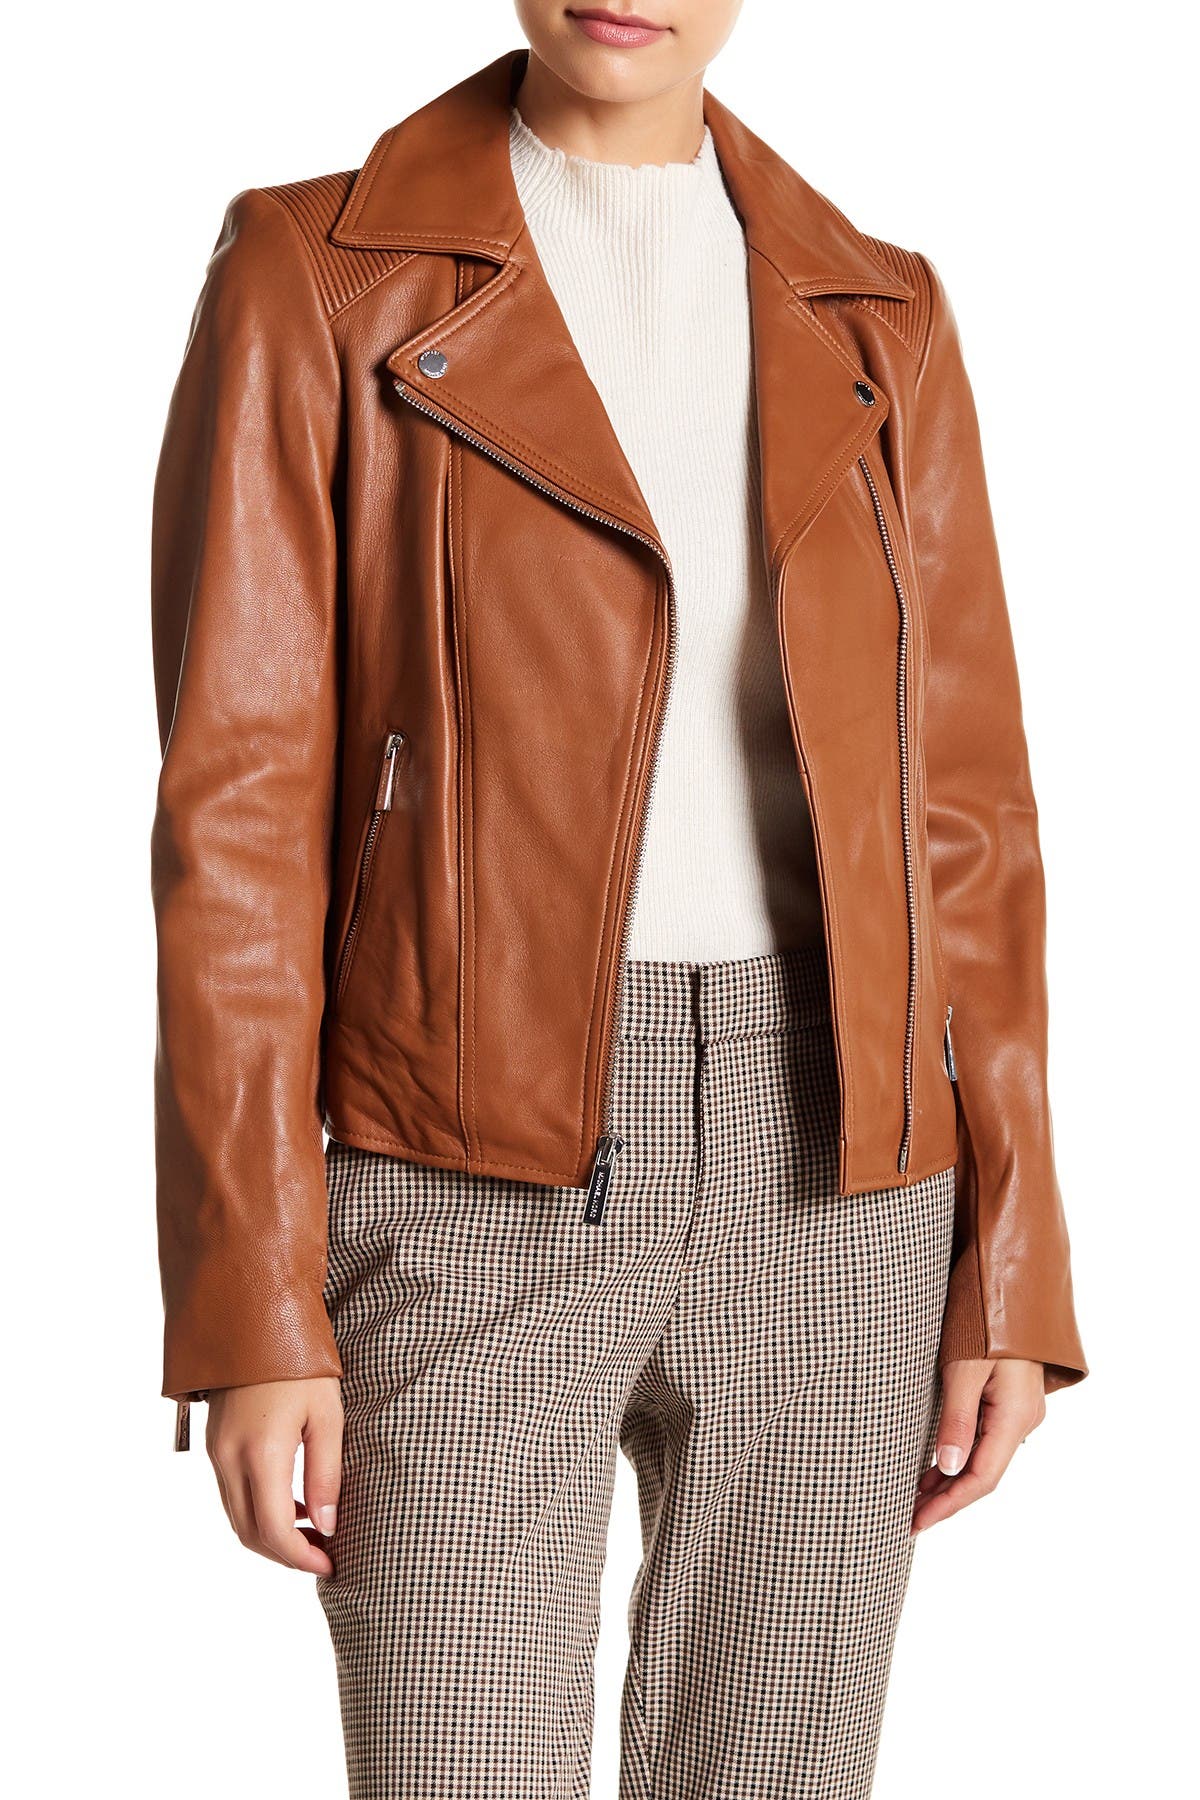 michael kors asymmetrical leather jacket